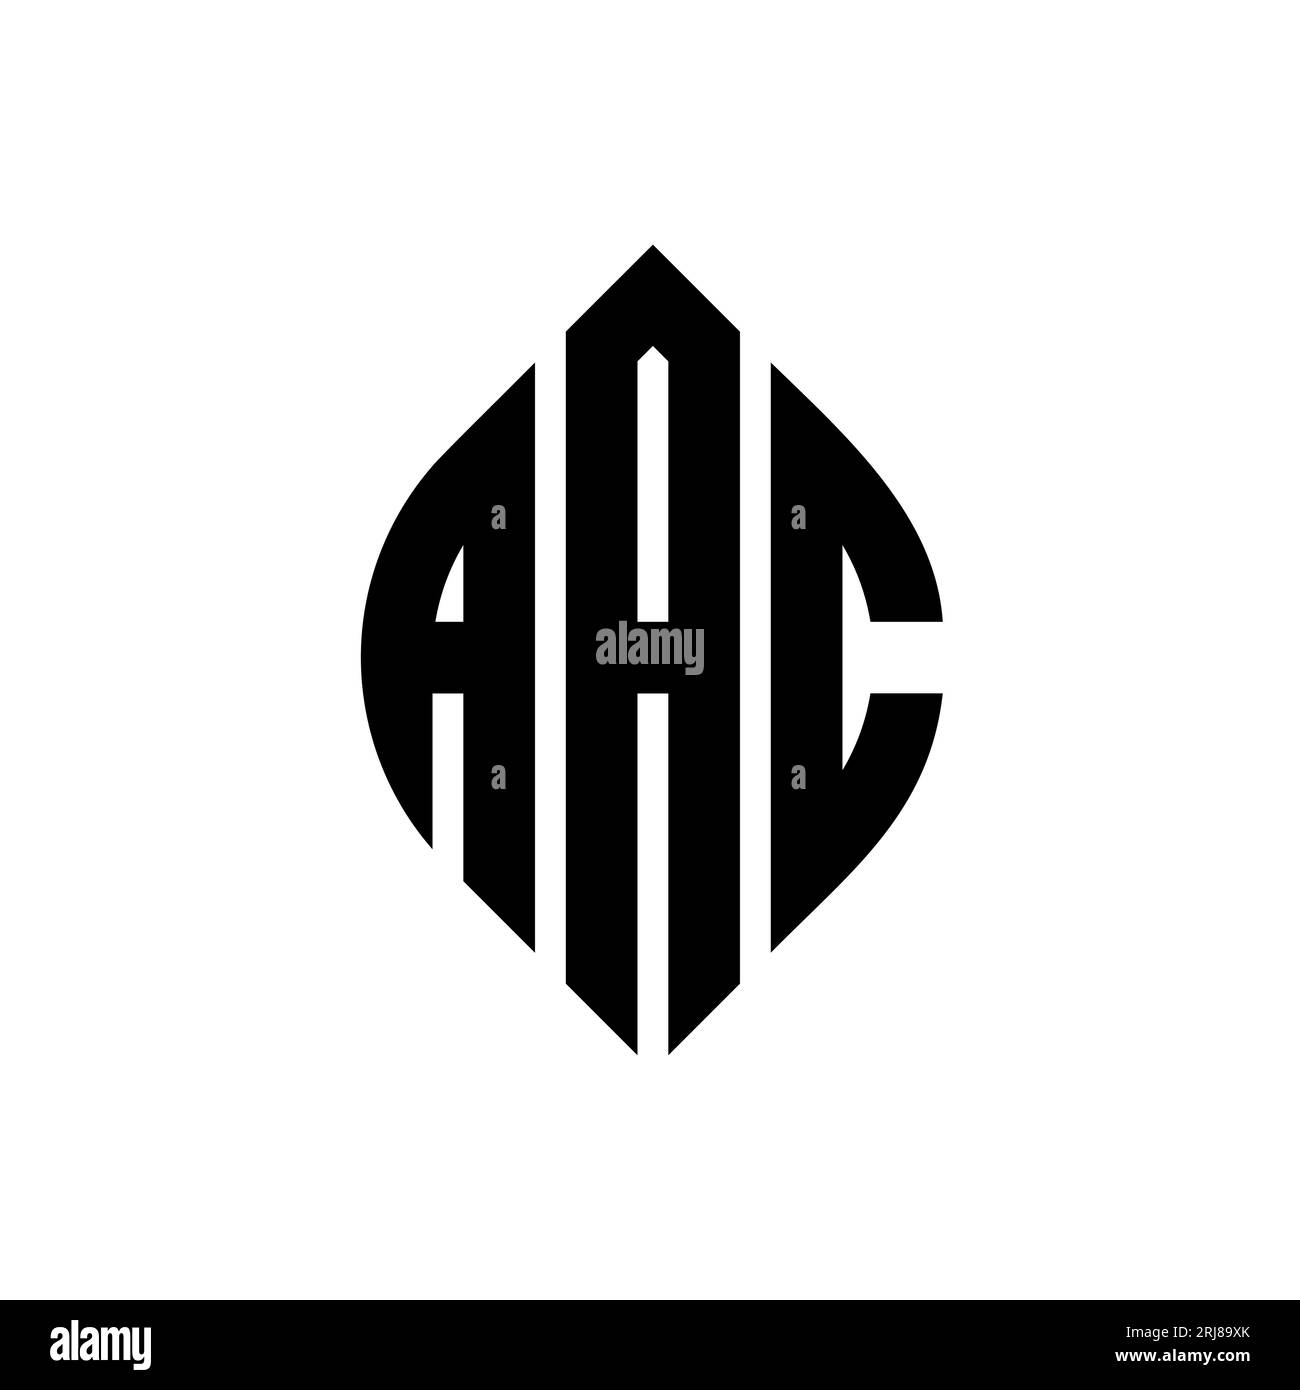 AAC kreisförmiges Logo mit Kreis- und Ellipsenform. AAC-Ellipsenbuchstaben im typografischen Stil. Die drei Initialen bilden ein kreisförmiges Logo. AAC CI Stock Vektor